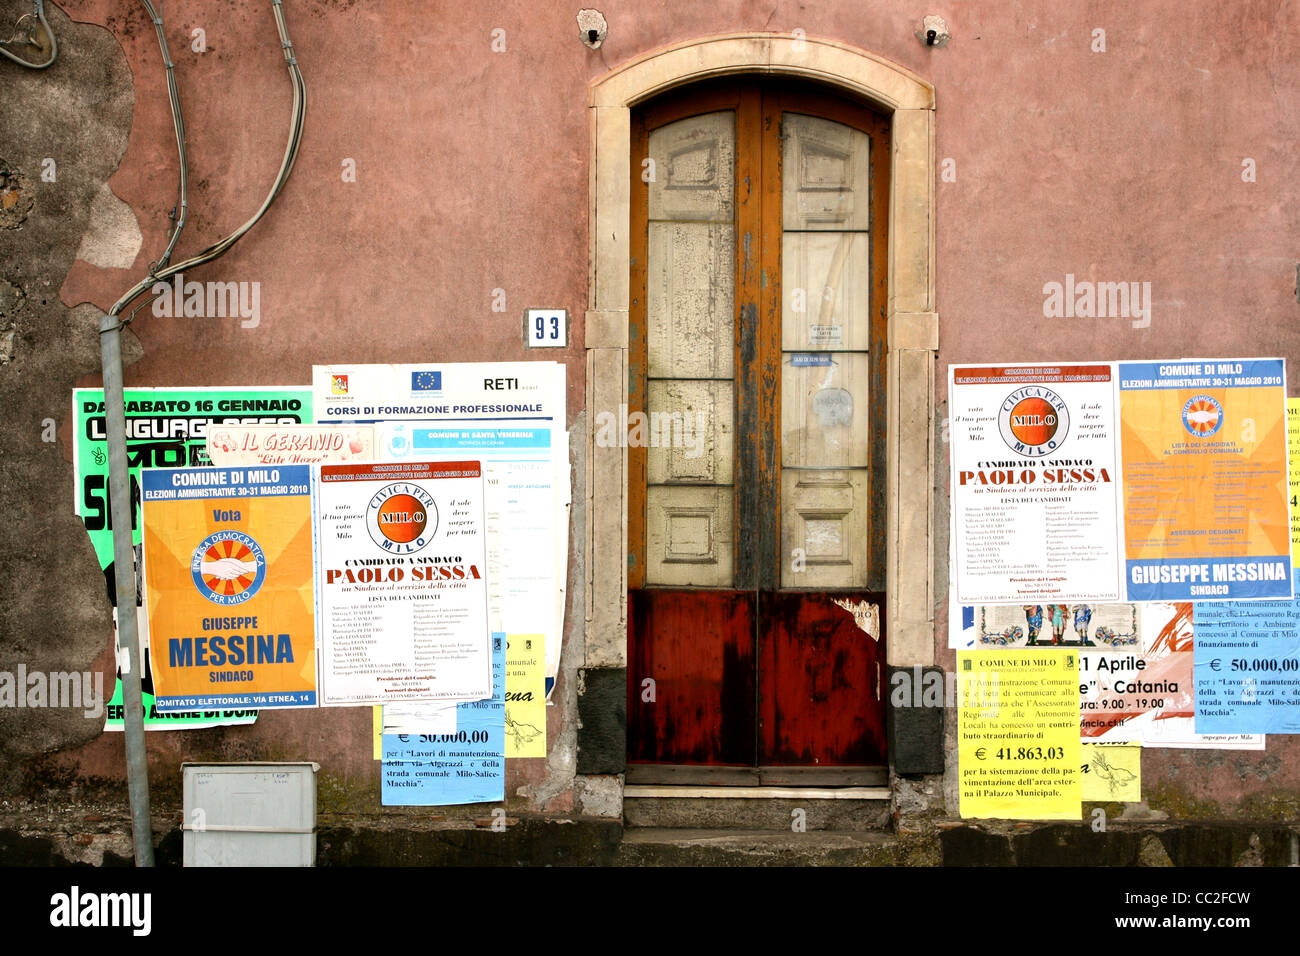 Una piccola porta con il numero 93 accanto ad essa contro una parete rossa in Sicilia, Italia. Poster per feste locali decorano le pareti. Foto Stock